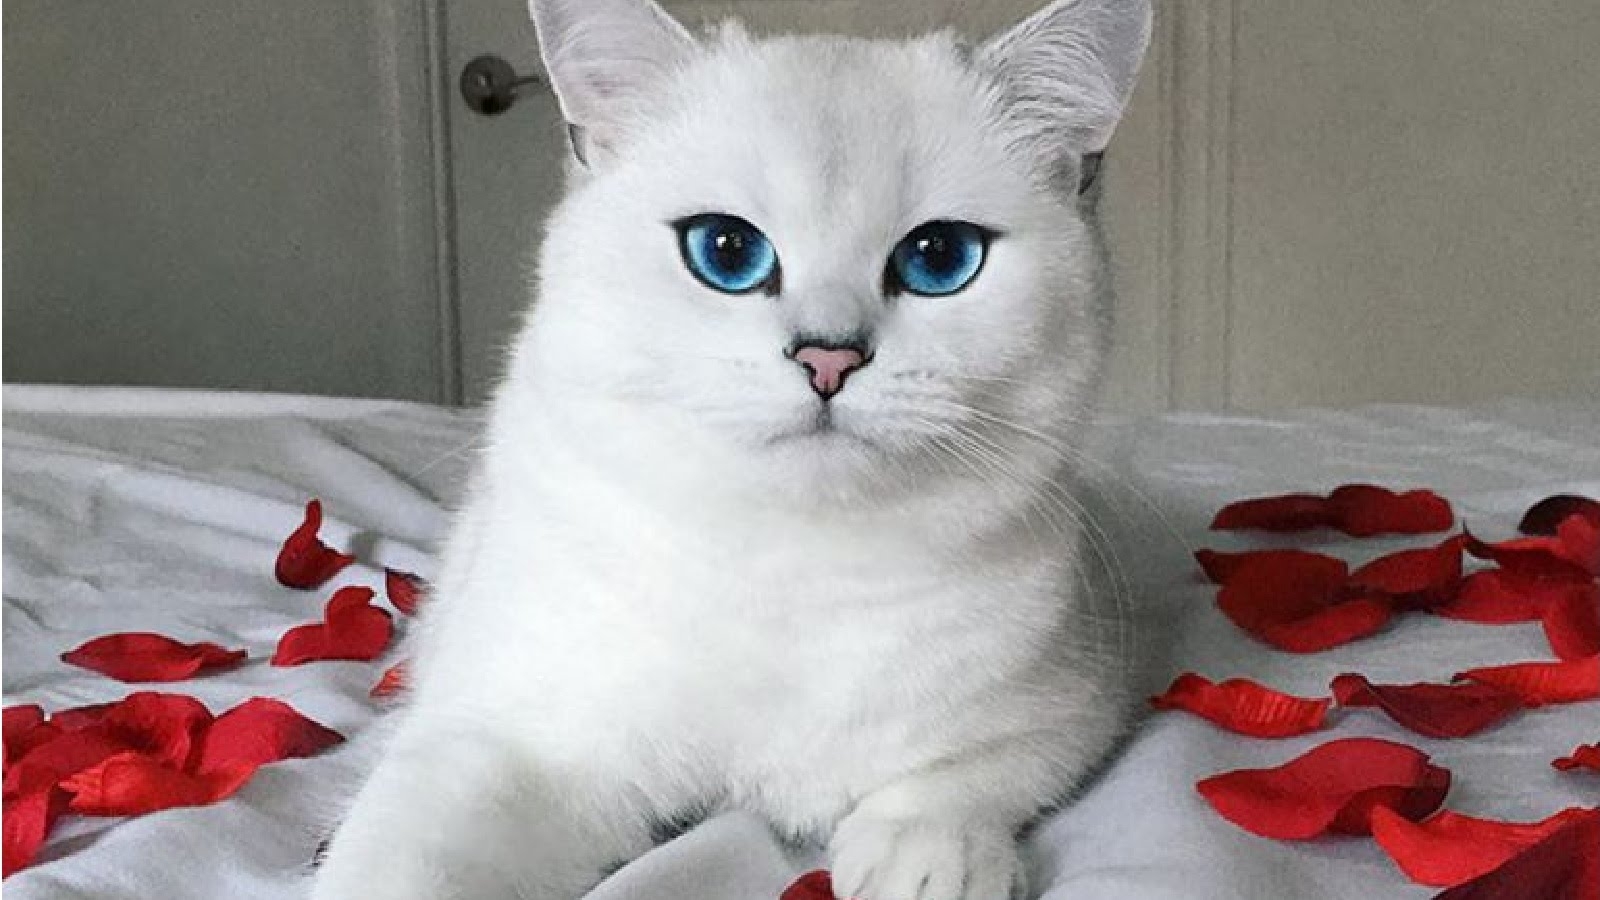 Порода самой милой кошки. Белая Британская шиншилла Коби. Британская шиншилла кобби кошка. Британская короткошёрстная кошка Коби. Шиншилла Пойнт Коби котенок.